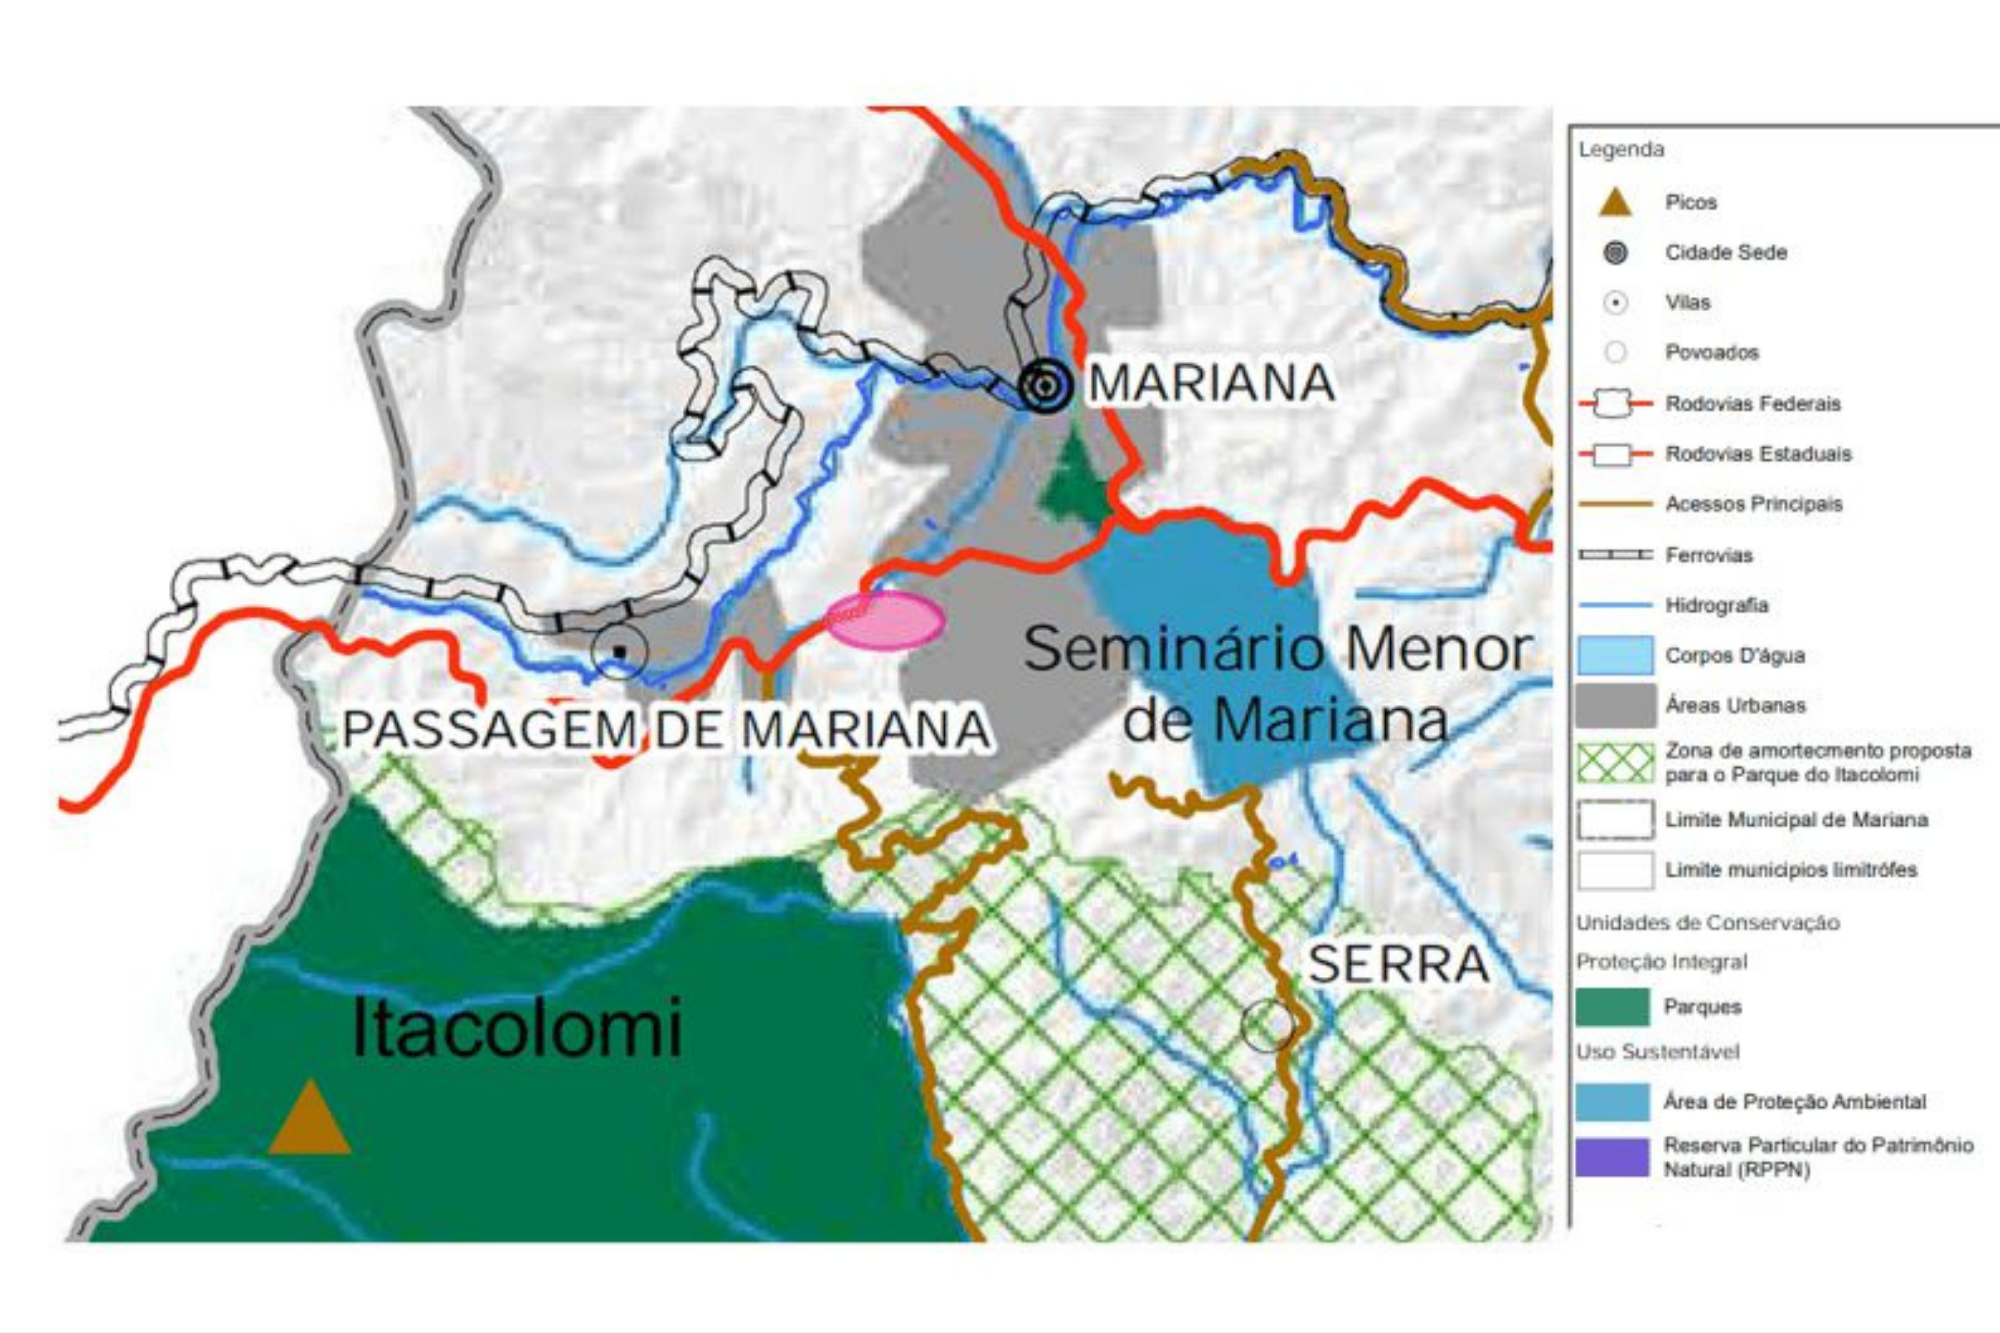 O mapa mostra a região de captação de água da cidade de Mariana, e a região da reserva do Parque Estadual do Itacolomi